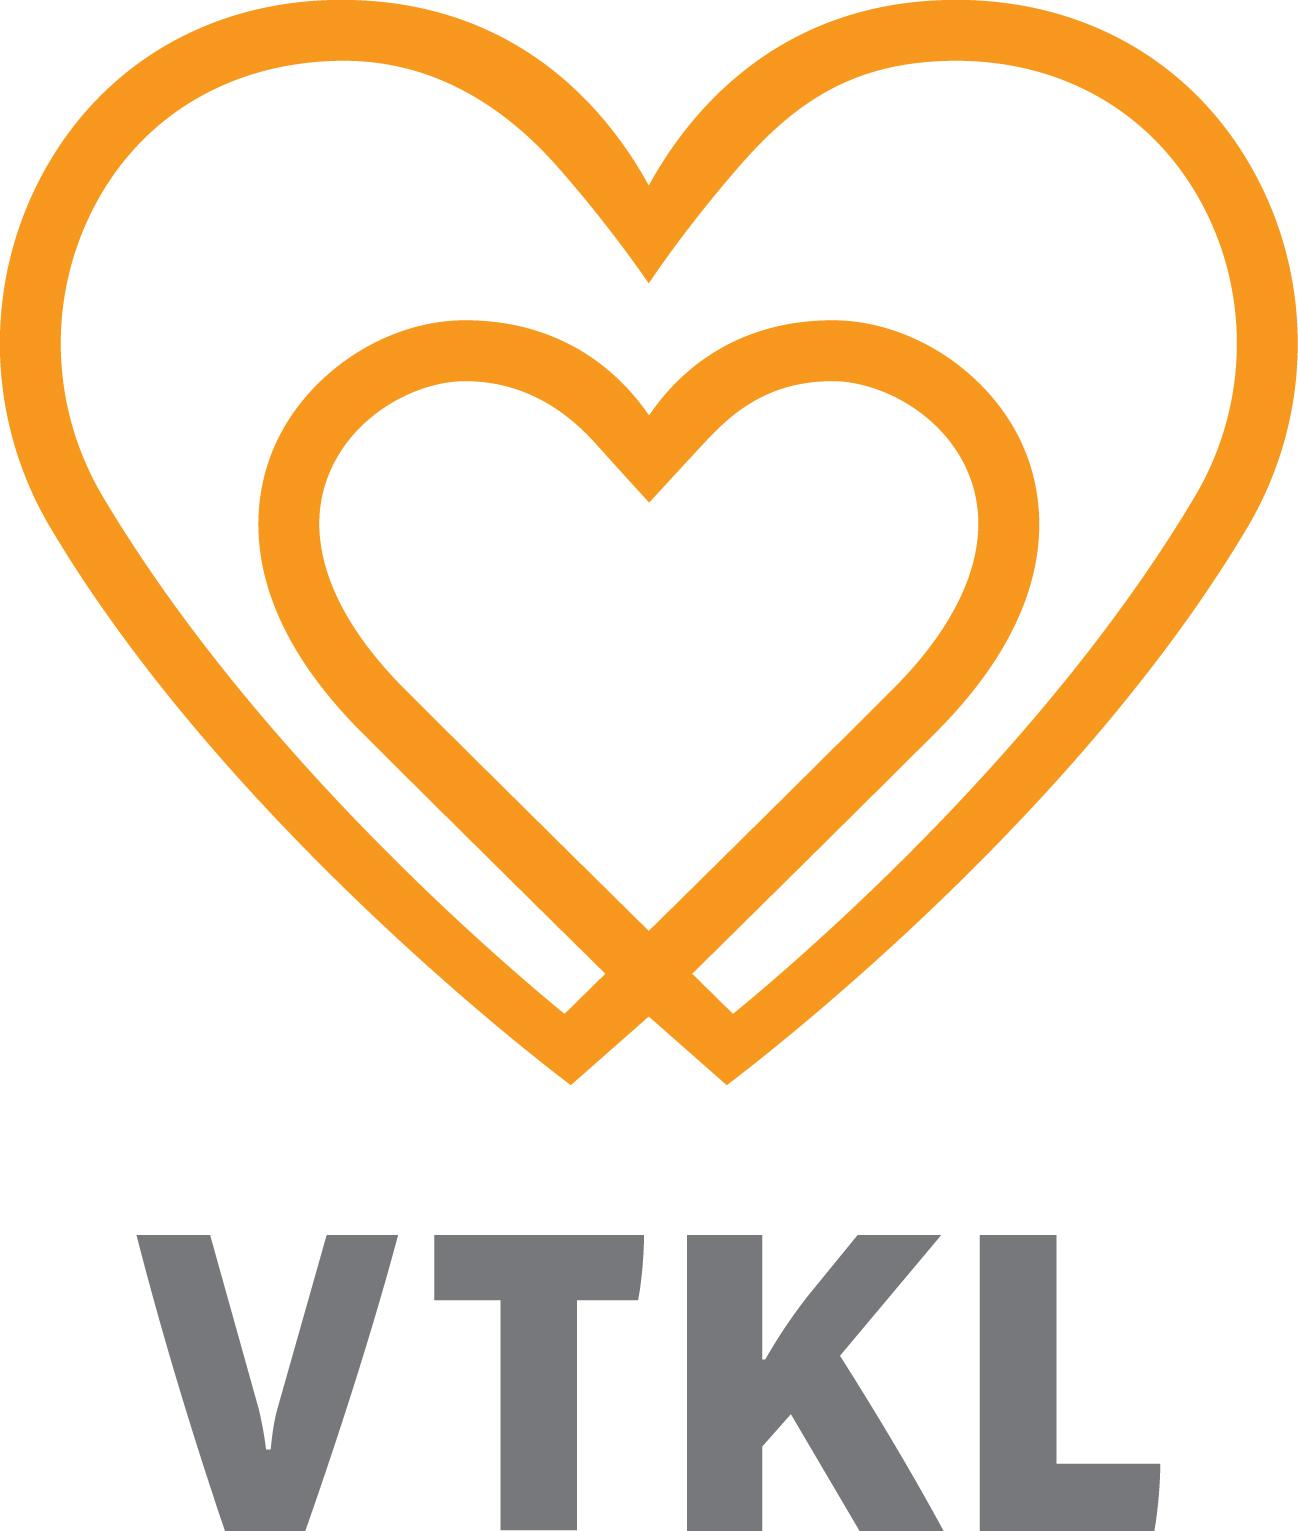 VTKL logo oranssi sydän.